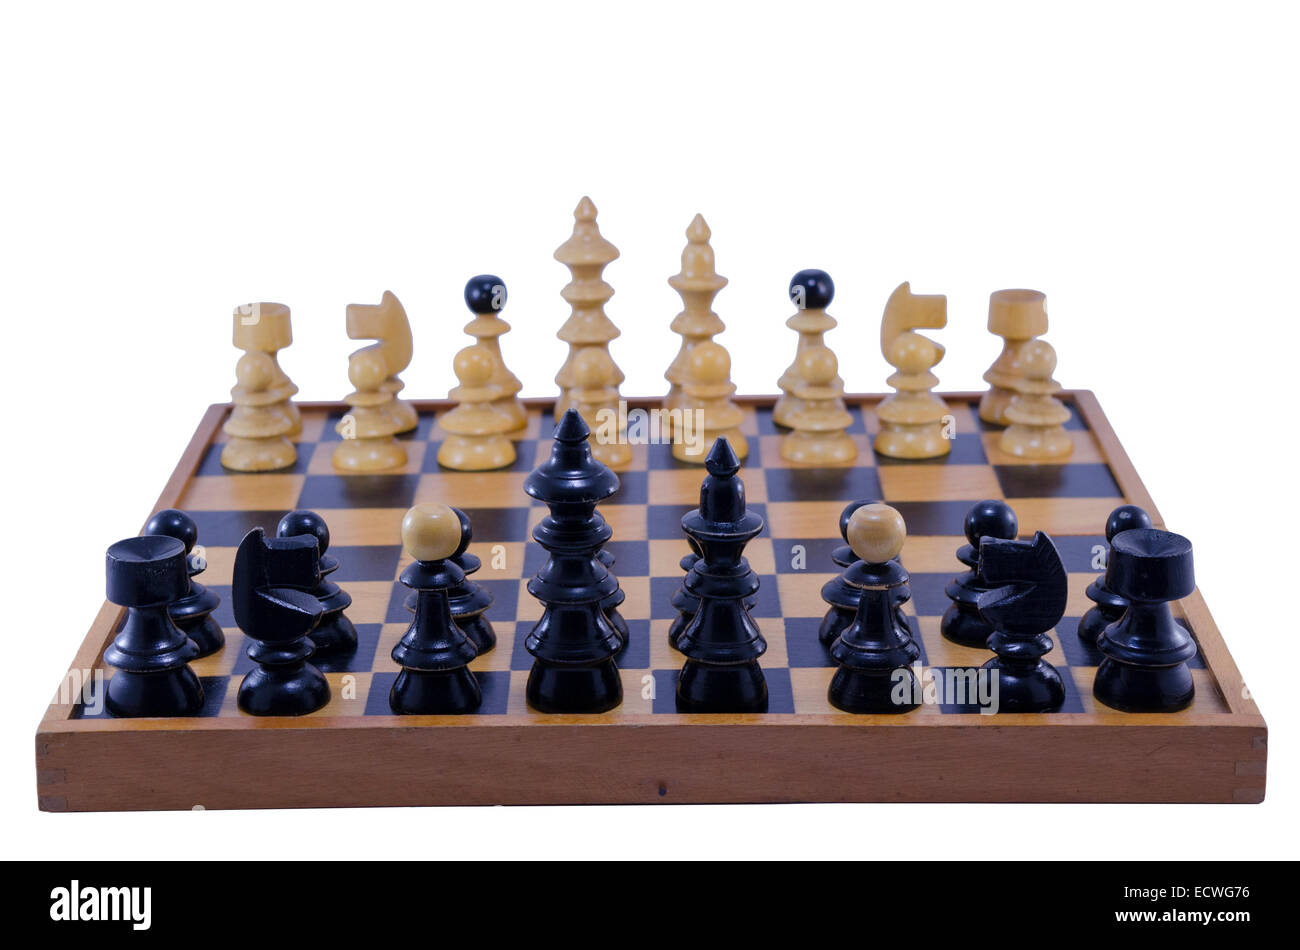 Vintage tablero de ajedrez con piezas de ajedrez listo para jugar, aislado en blanco Foto de stock